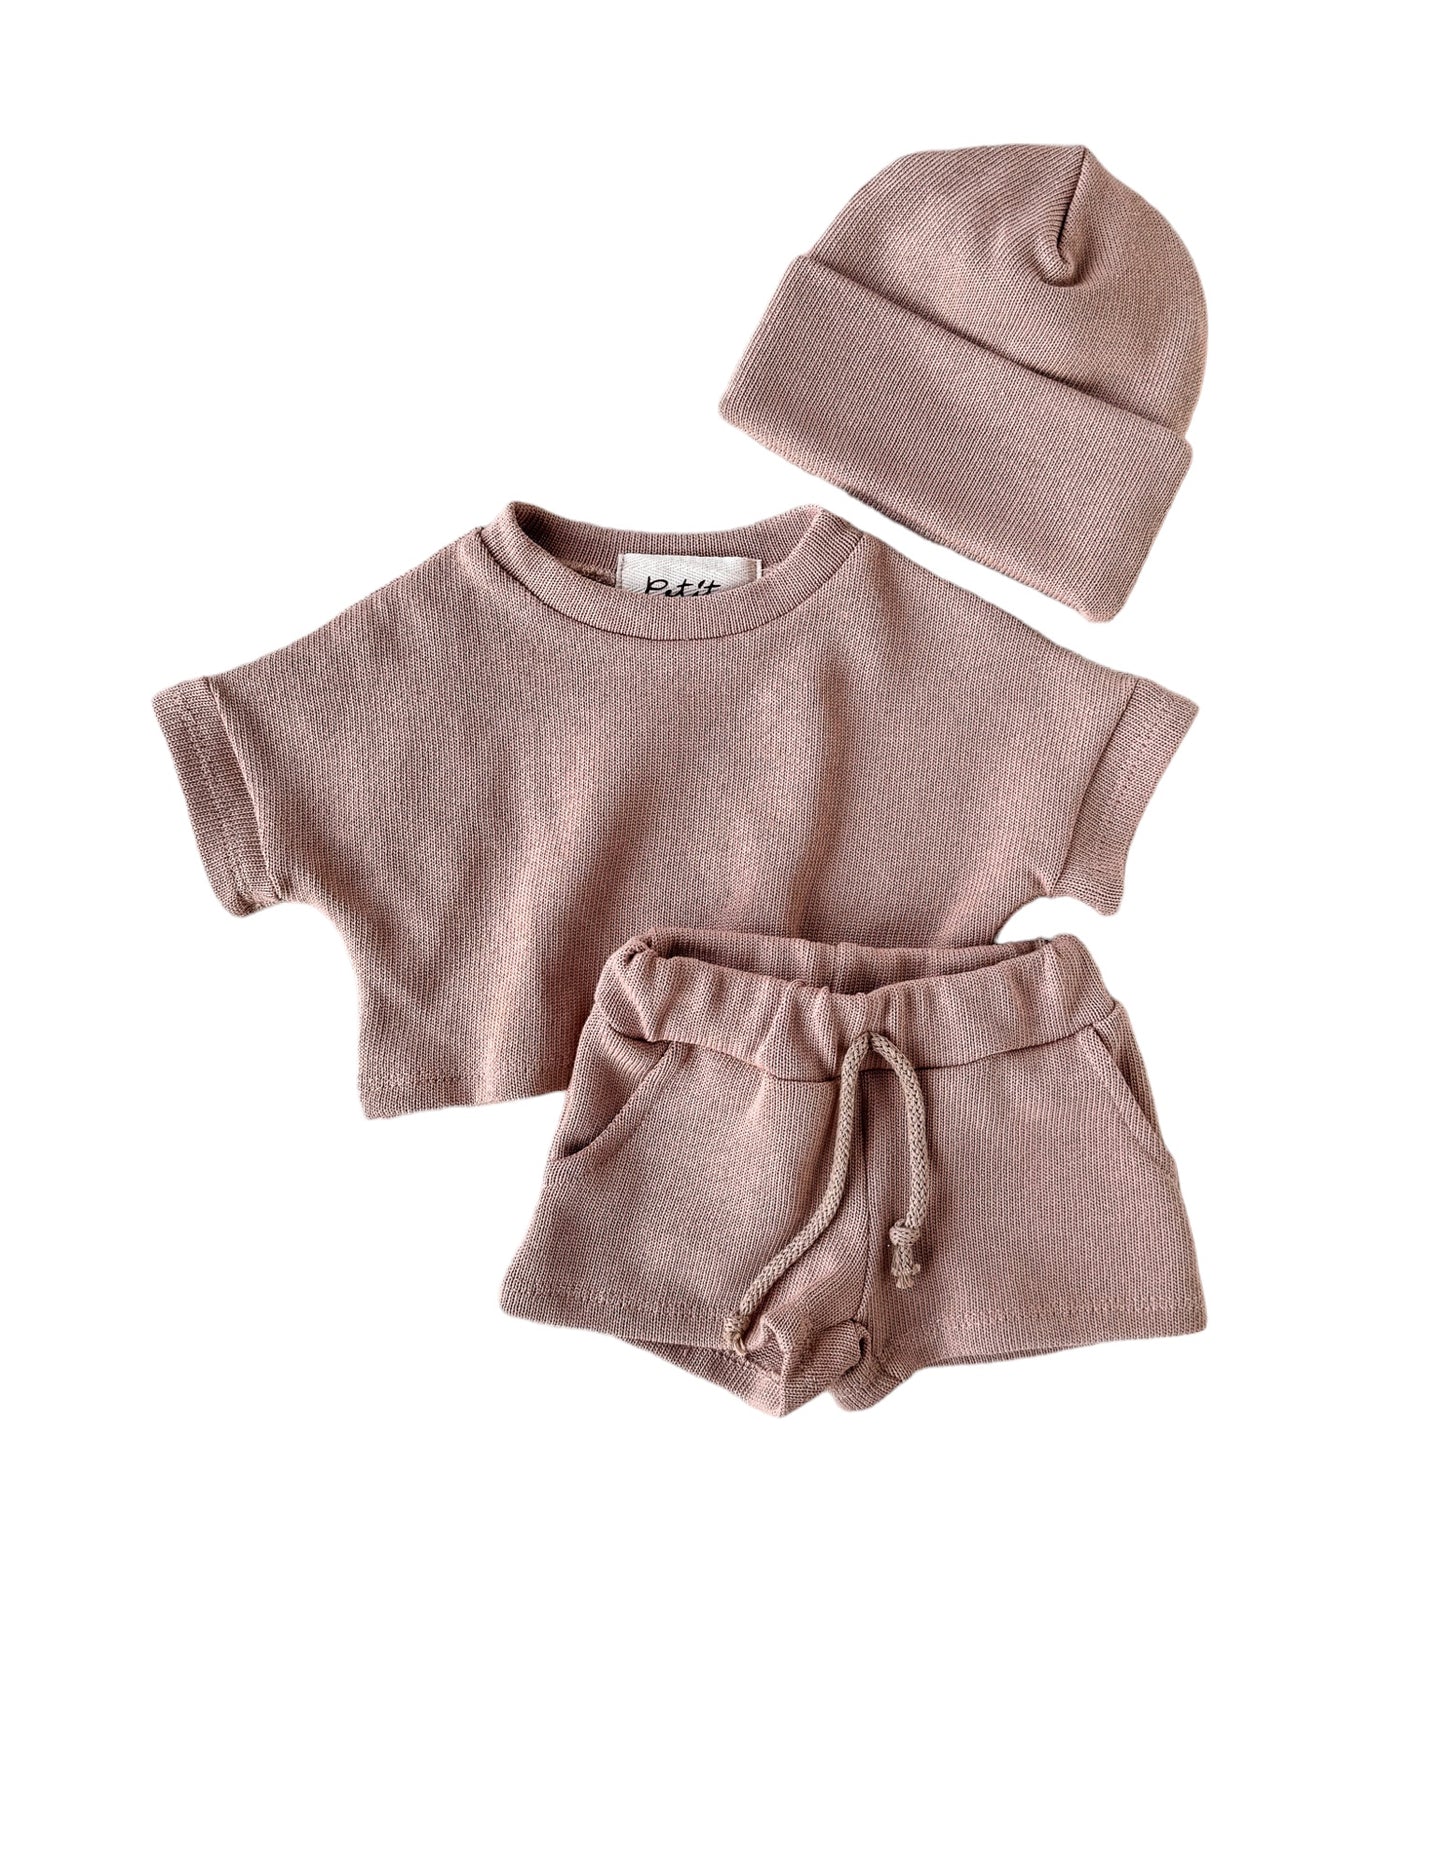 Knit shorts + top + beanie / dark beige